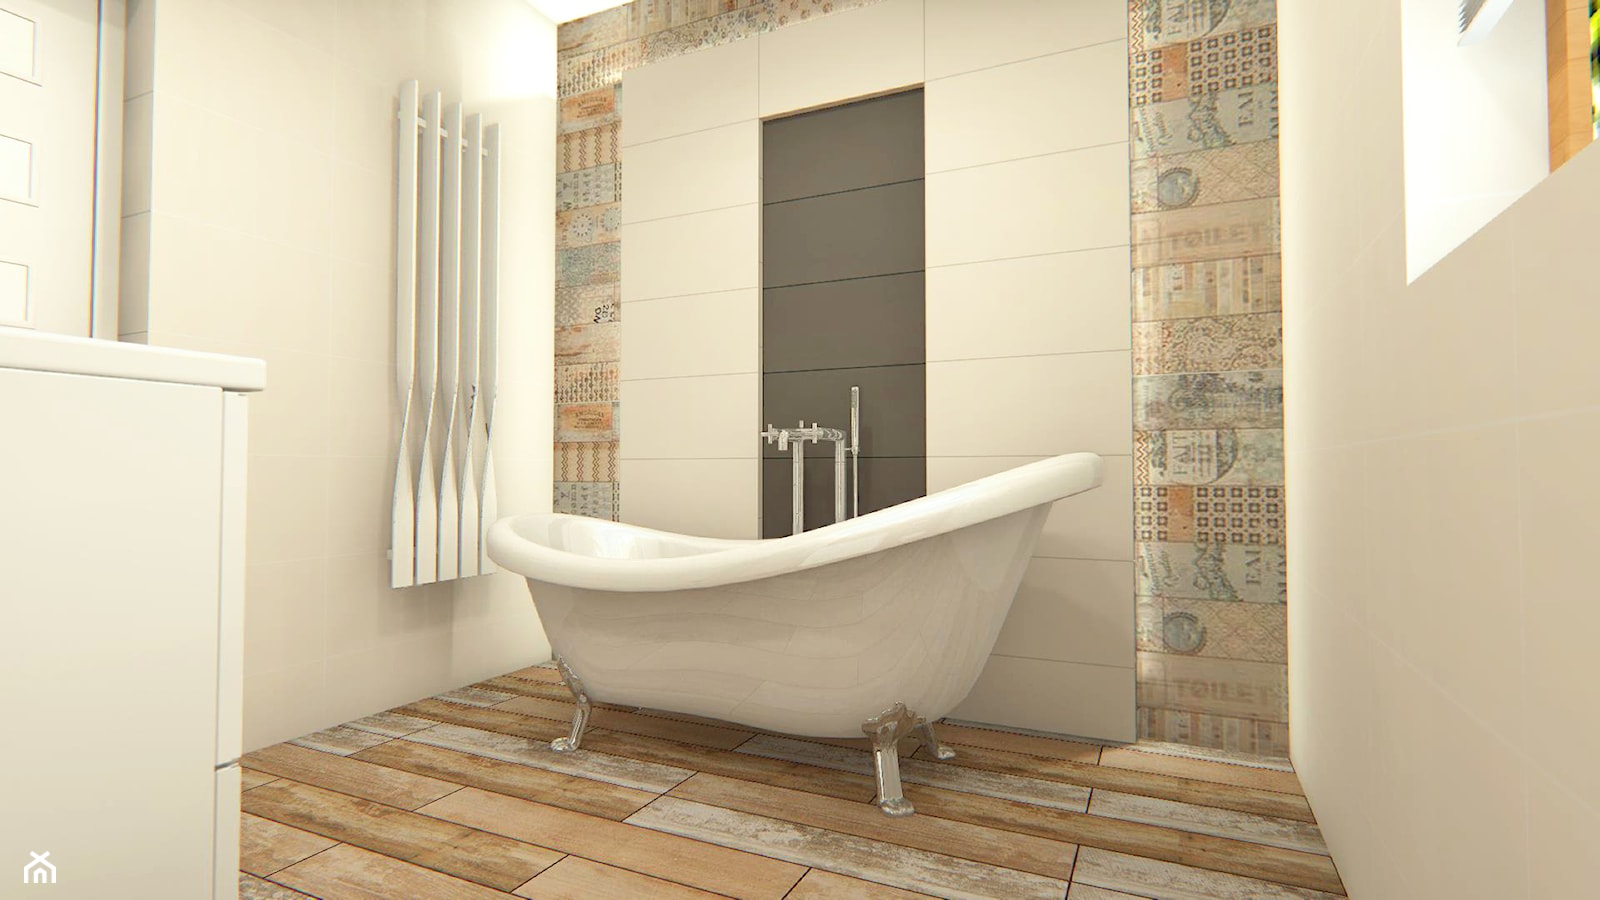 Łazienka Styl Rustykalny - Mała łazienka z oknem, styl rustykalny - zdjęcie od Combikol - Homebook